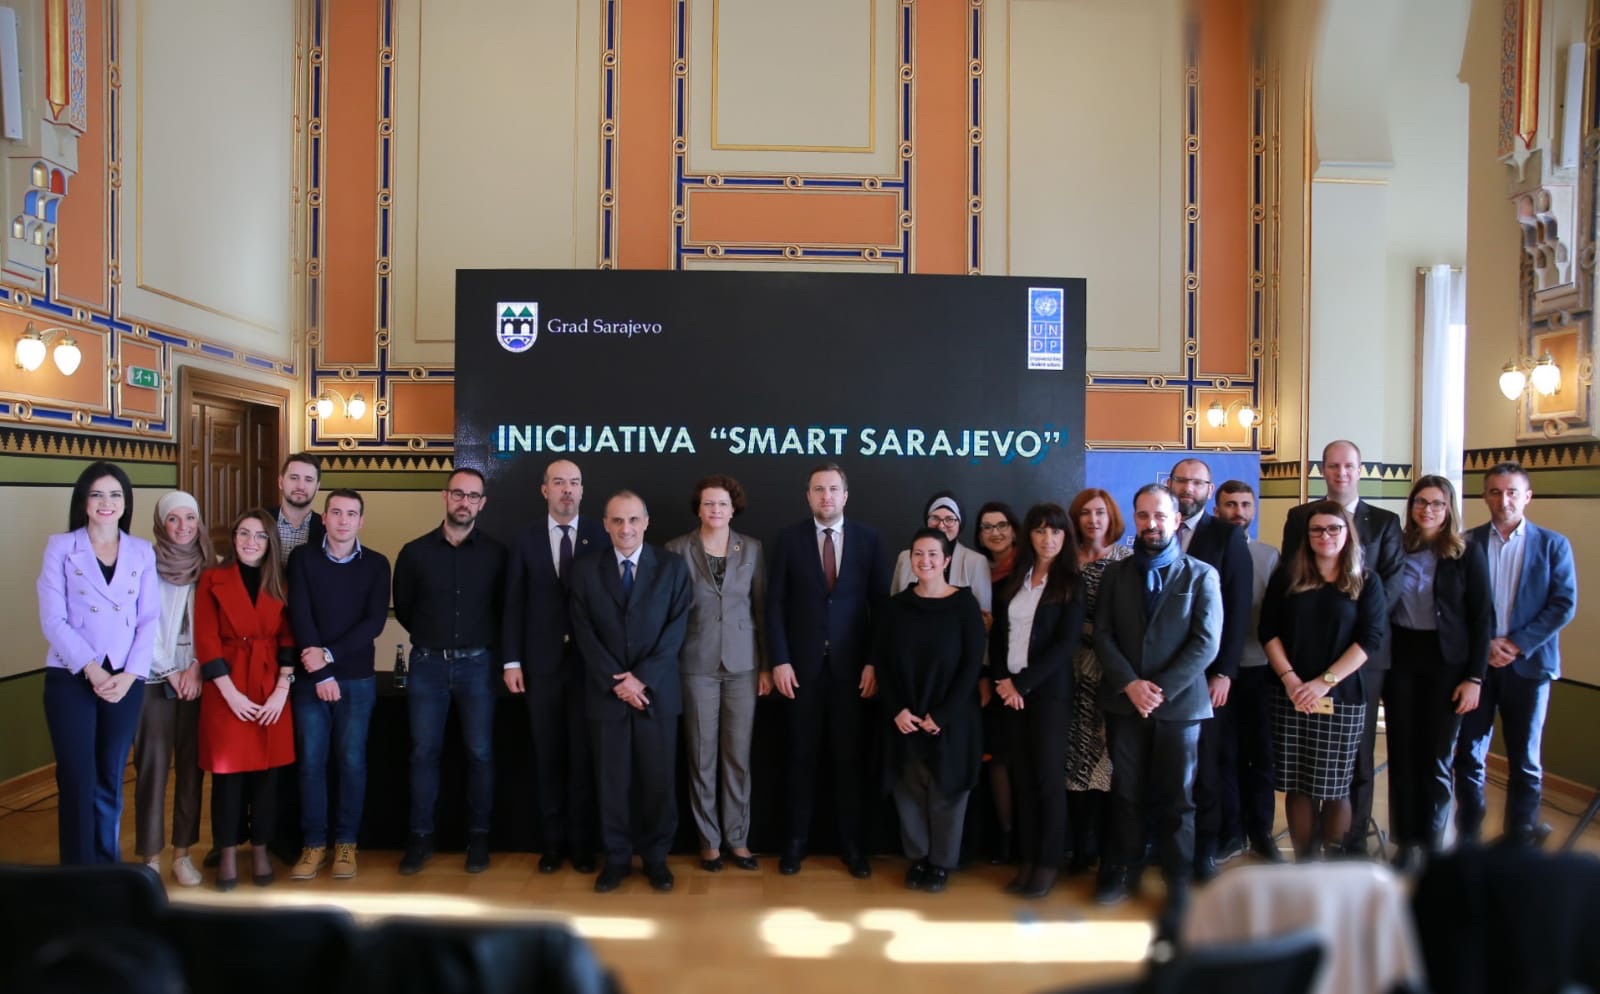  Kruna saradnje Grada Sarajeva i UNDP-a BiH 13 inovativnih tehnoloških projekata u sklopu „Smart Sarajevo“ inicijative